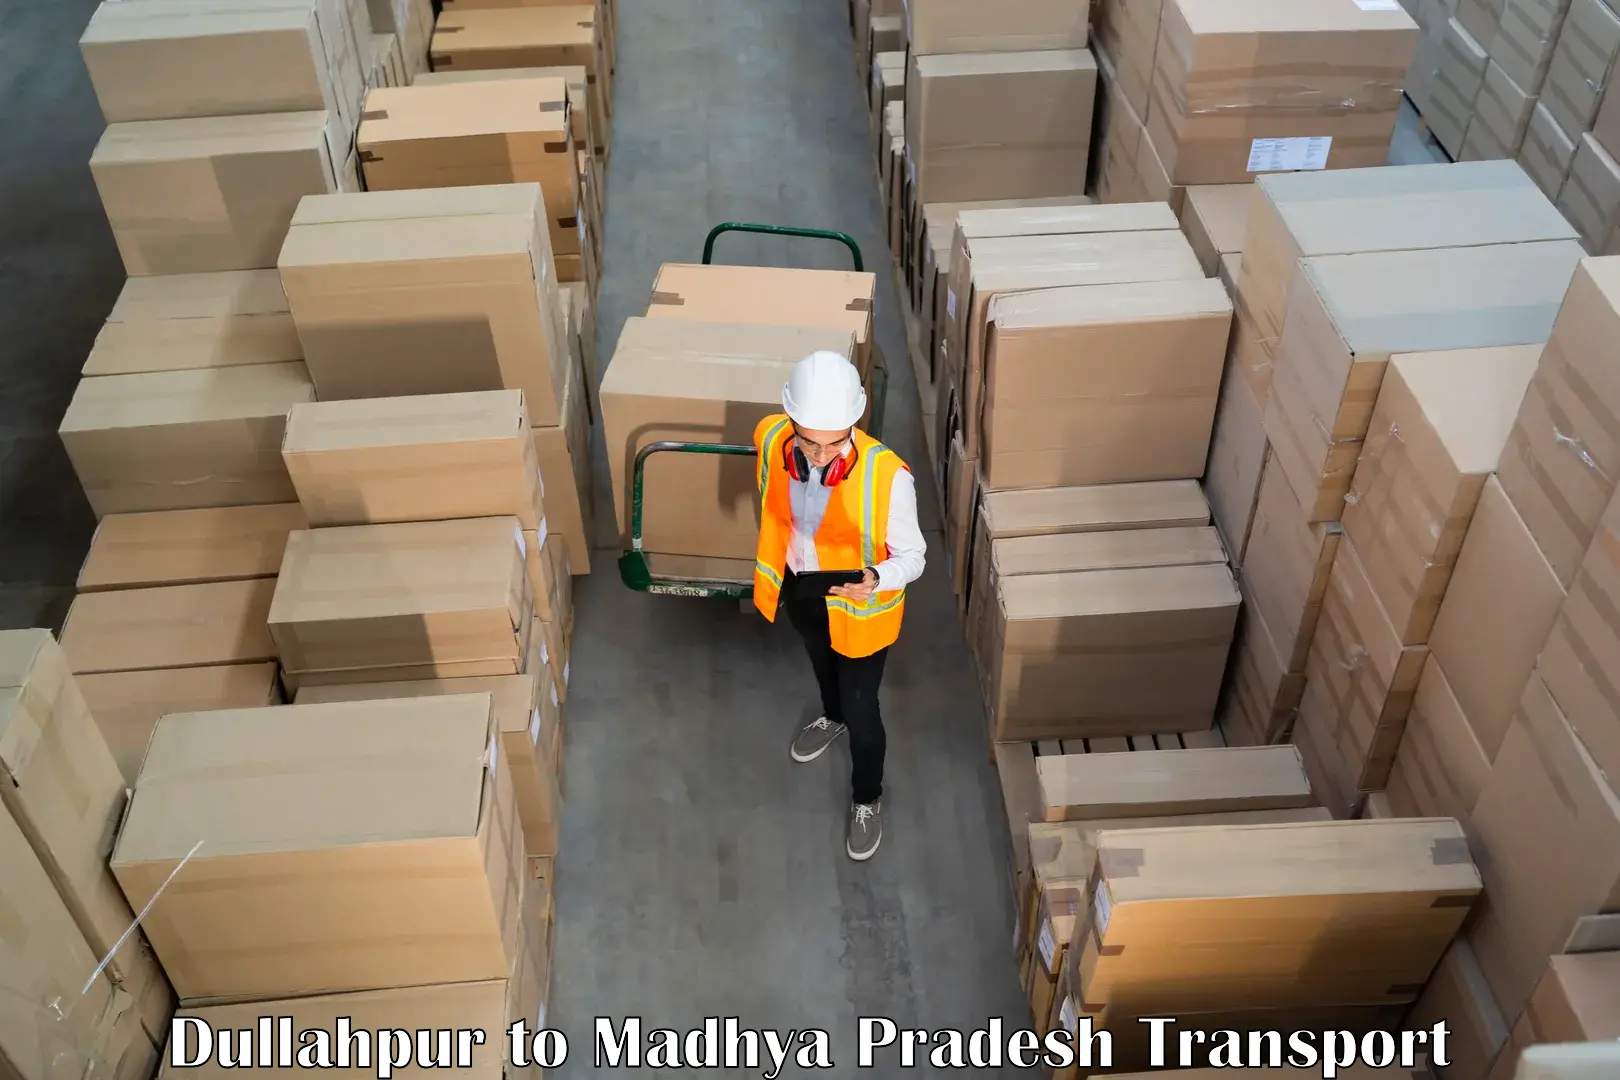 Container transport service Dullahpur to Multai